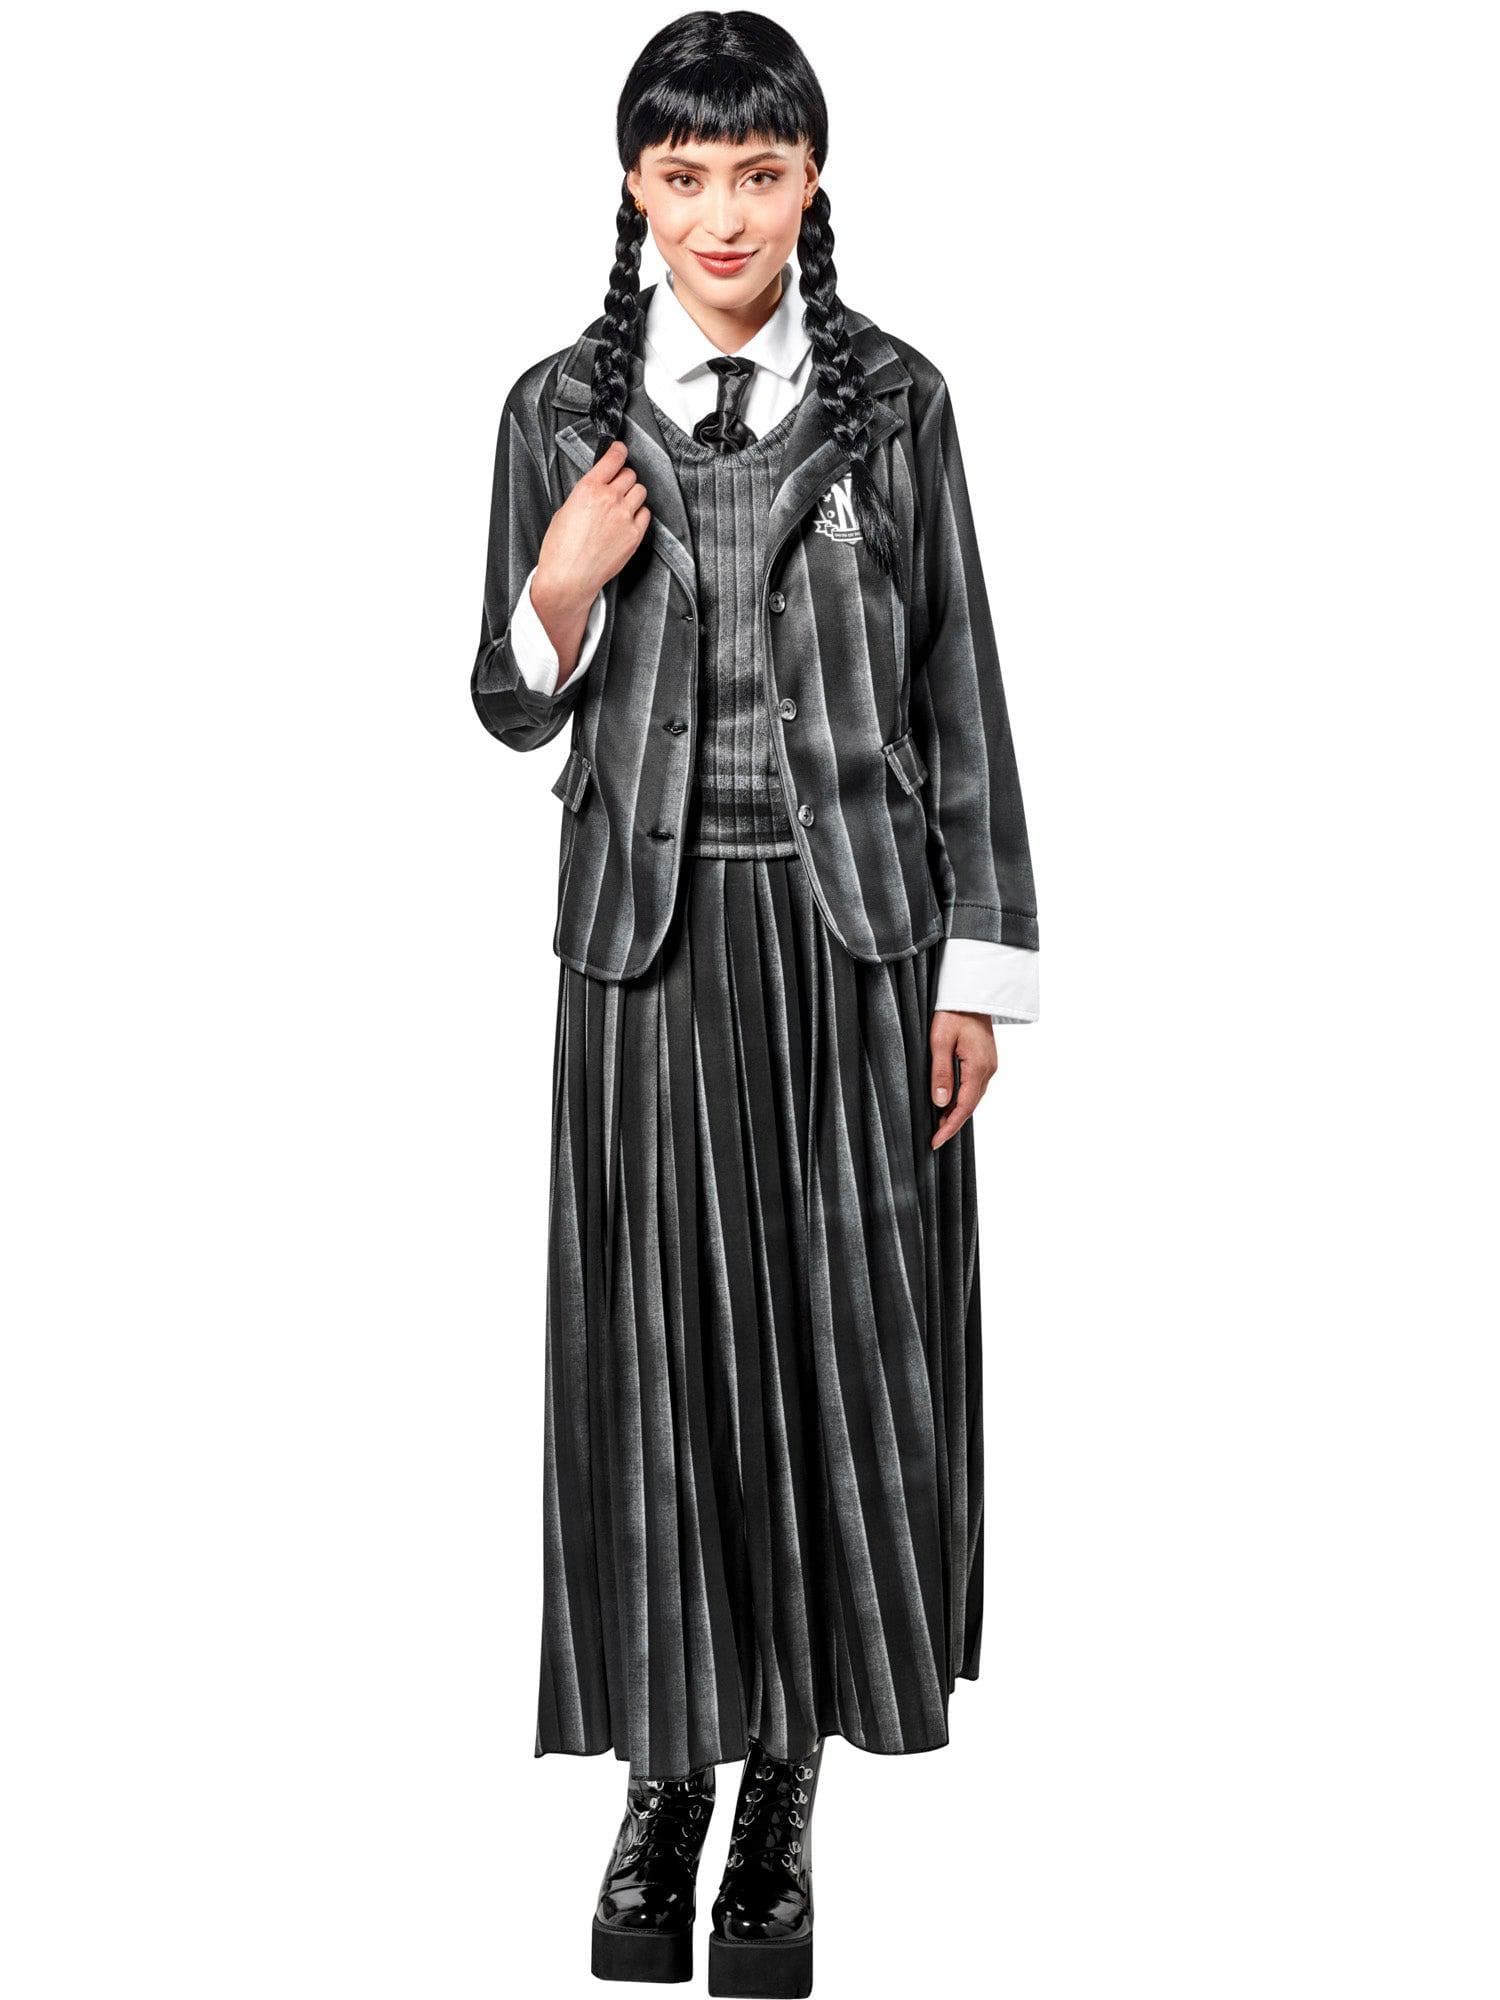 Wednesday Addams Nevermore Academy Uniform Adult Costume - costumes.com